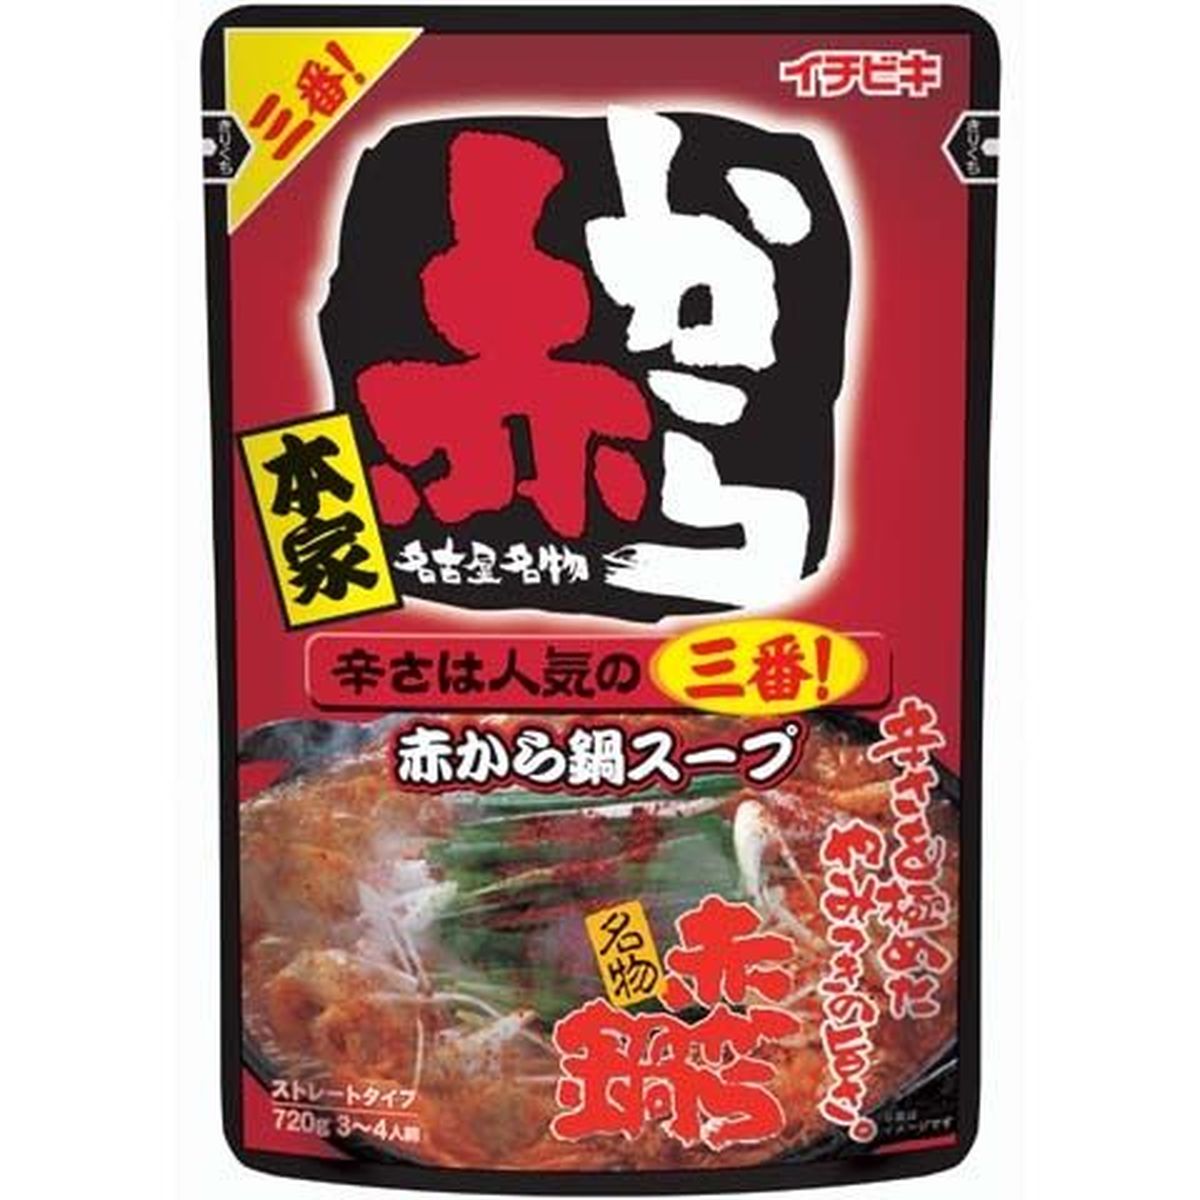 【10個入リ】イチビキ ストレート赤カラ鍋スープ 3番 720g